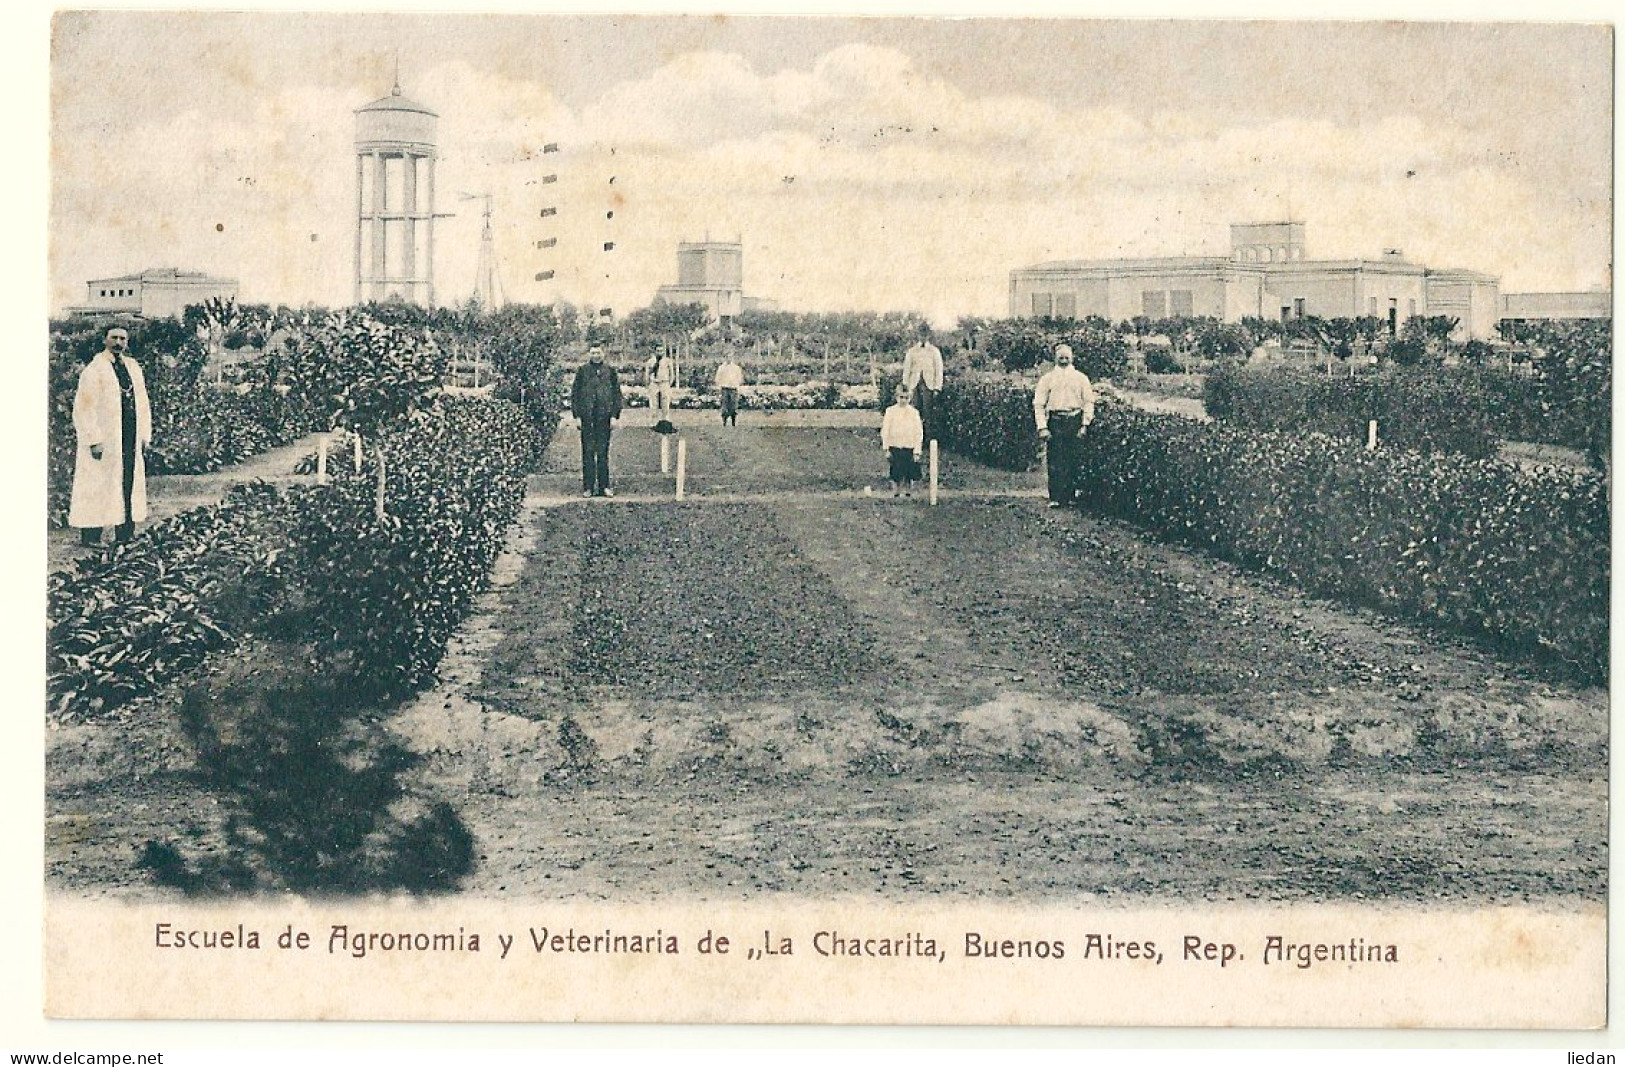 Escuela De Agronomia Y Veterinaria "La Chacarita" - Buenos Aires - Torino - 1911 - Argentine